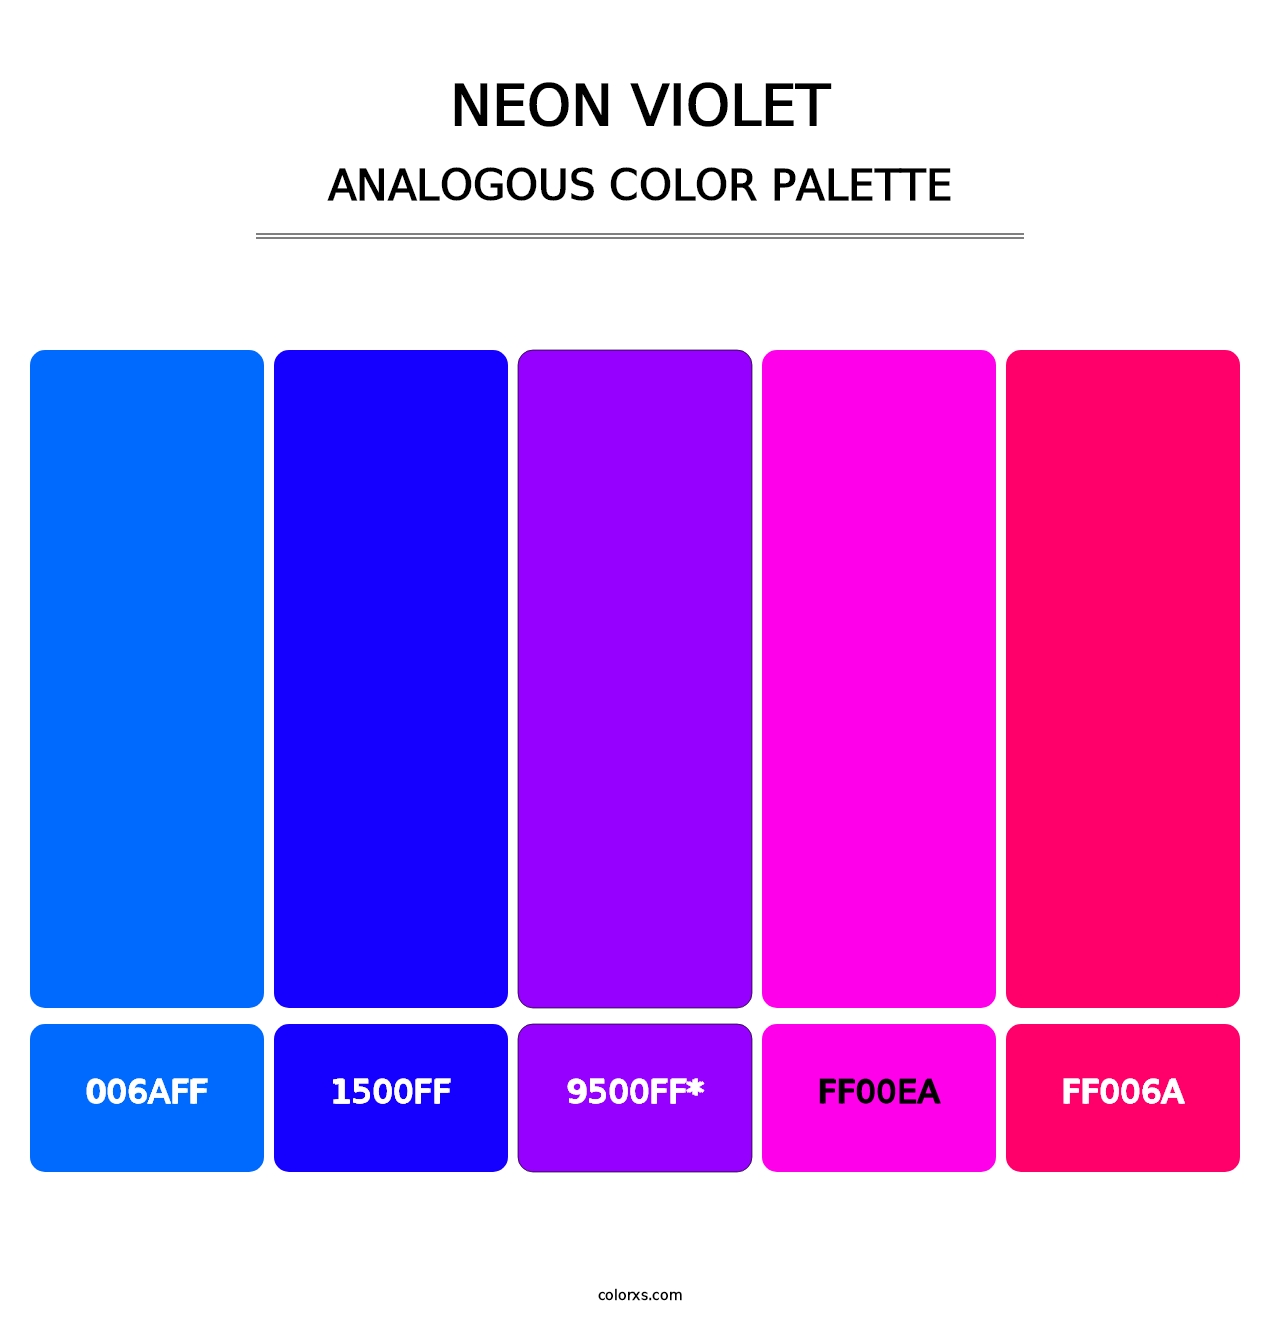 Neon Violet - Analogous Color Palette